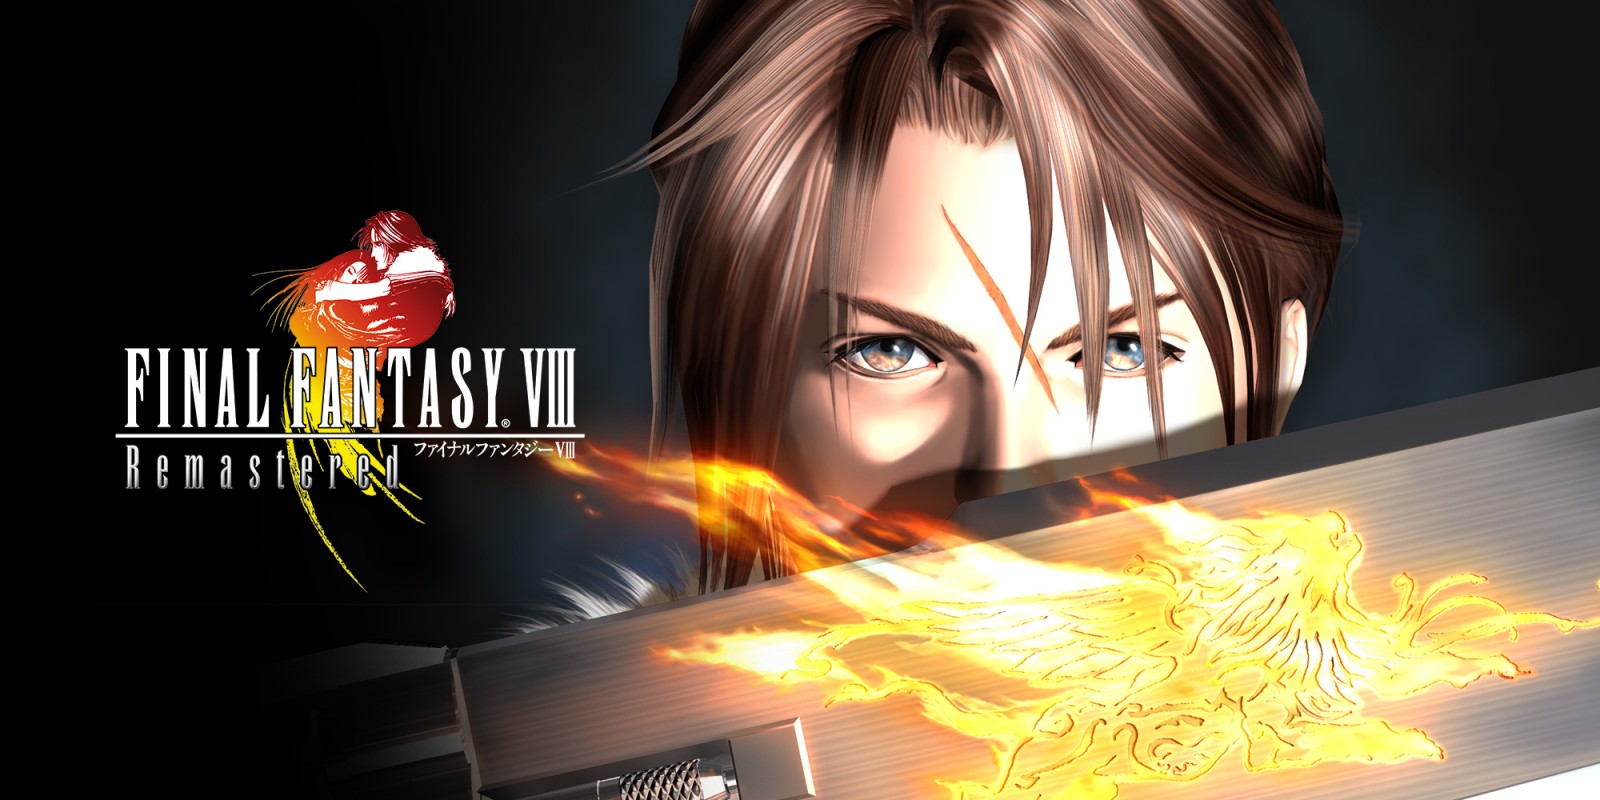 FINAL FANTASY VIII Remastered теперь доступен на ПК, PS4 и Switch - Запустить трейлер